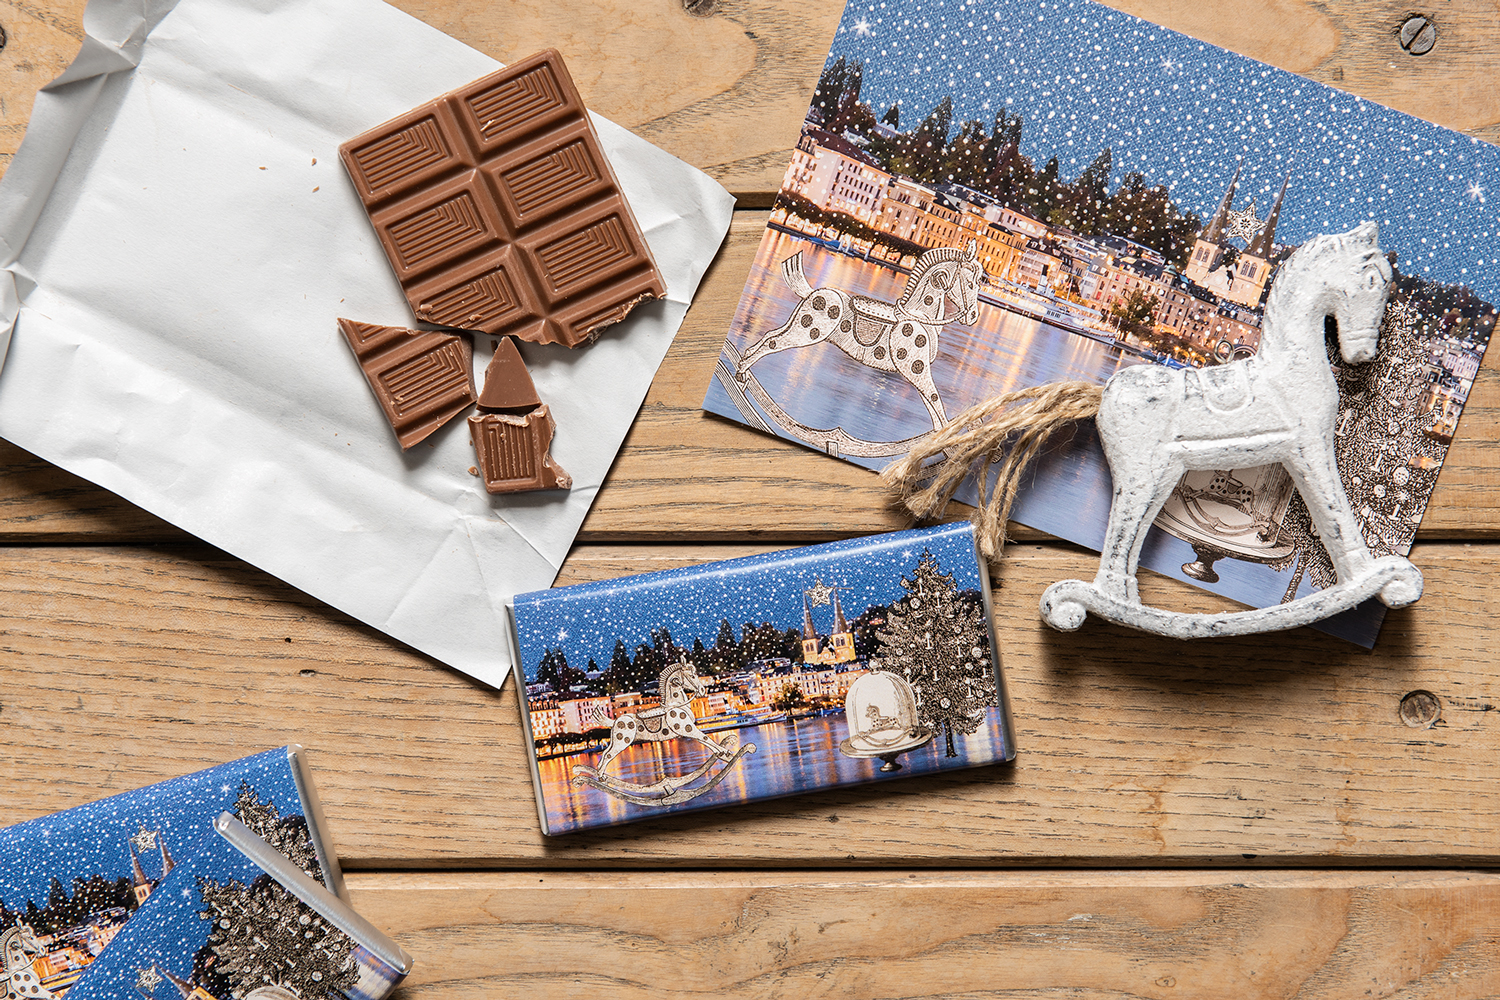 Schokolade 30 gm in besonderen Luzerner Verpackungen aus dem Hause Fotografik-Werk aus dem Bruchquartier Luzern